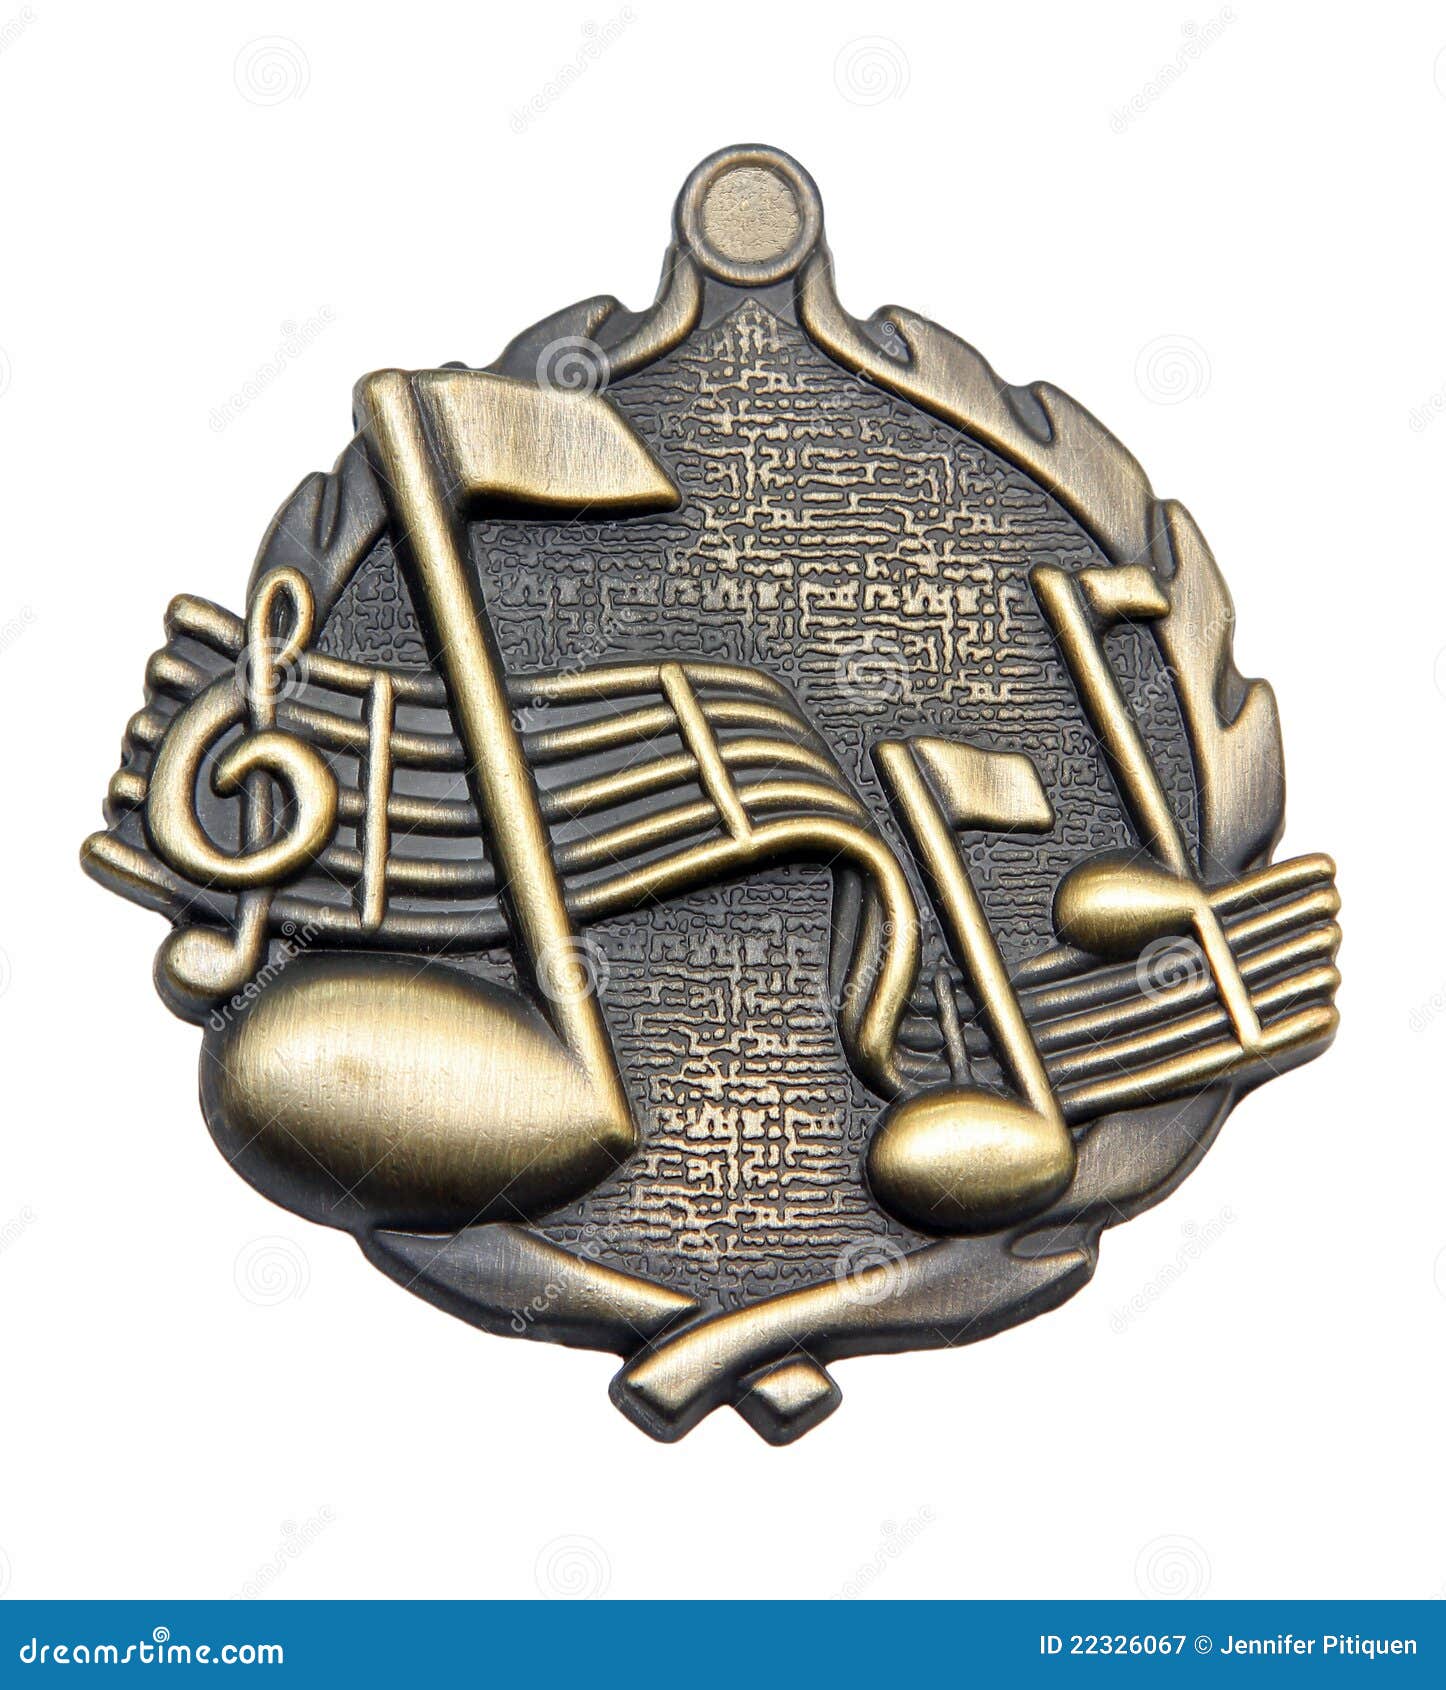 music medallion